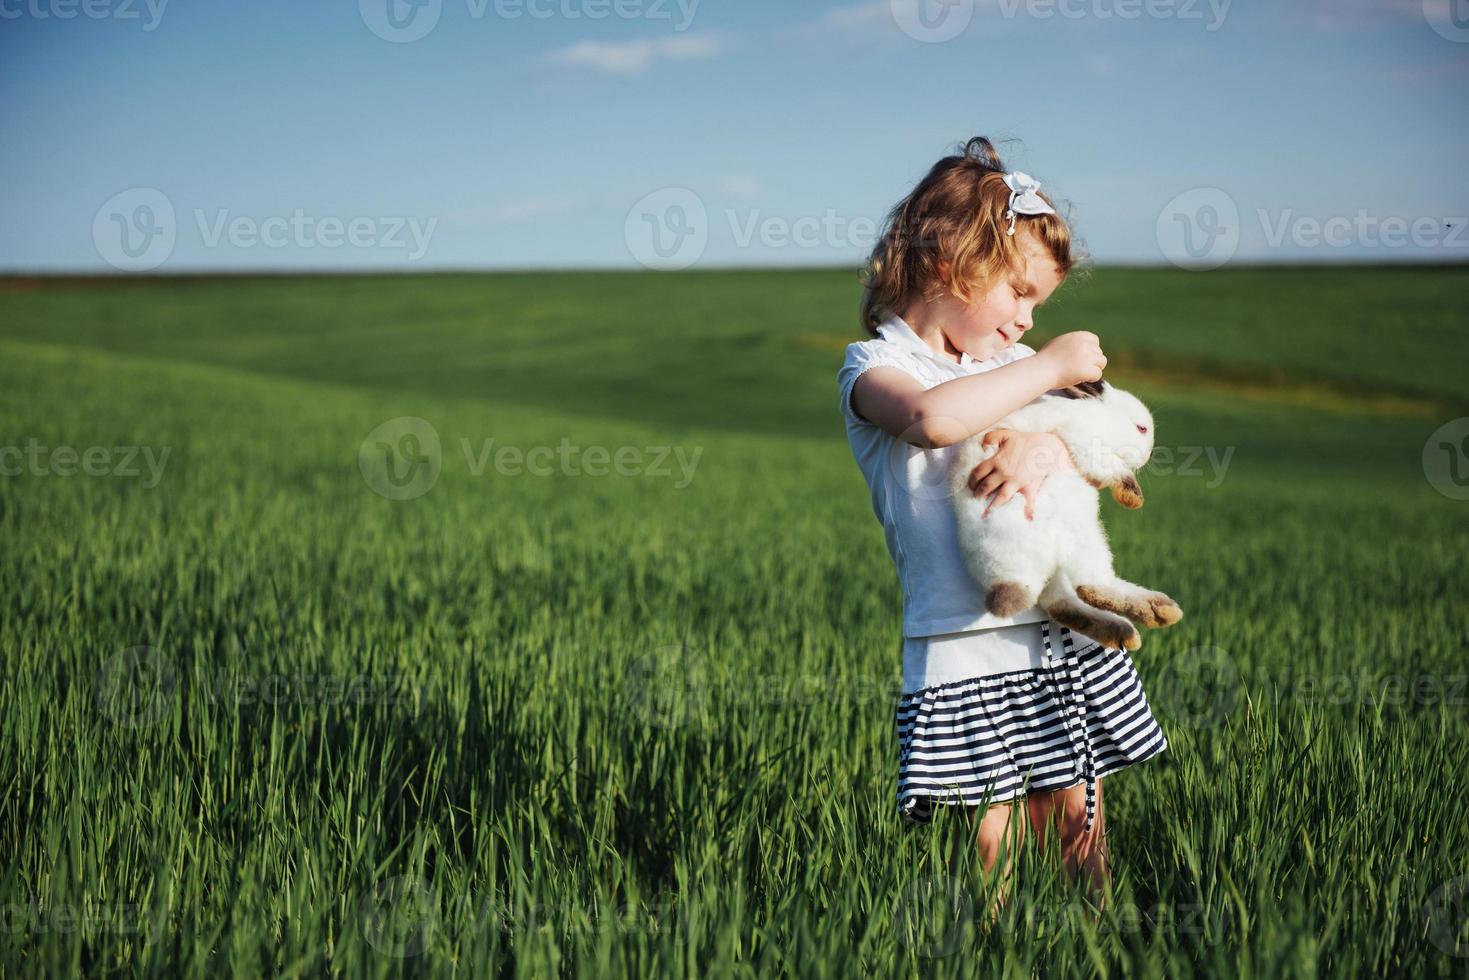 conejo bebé en un campo de trigo verde foto